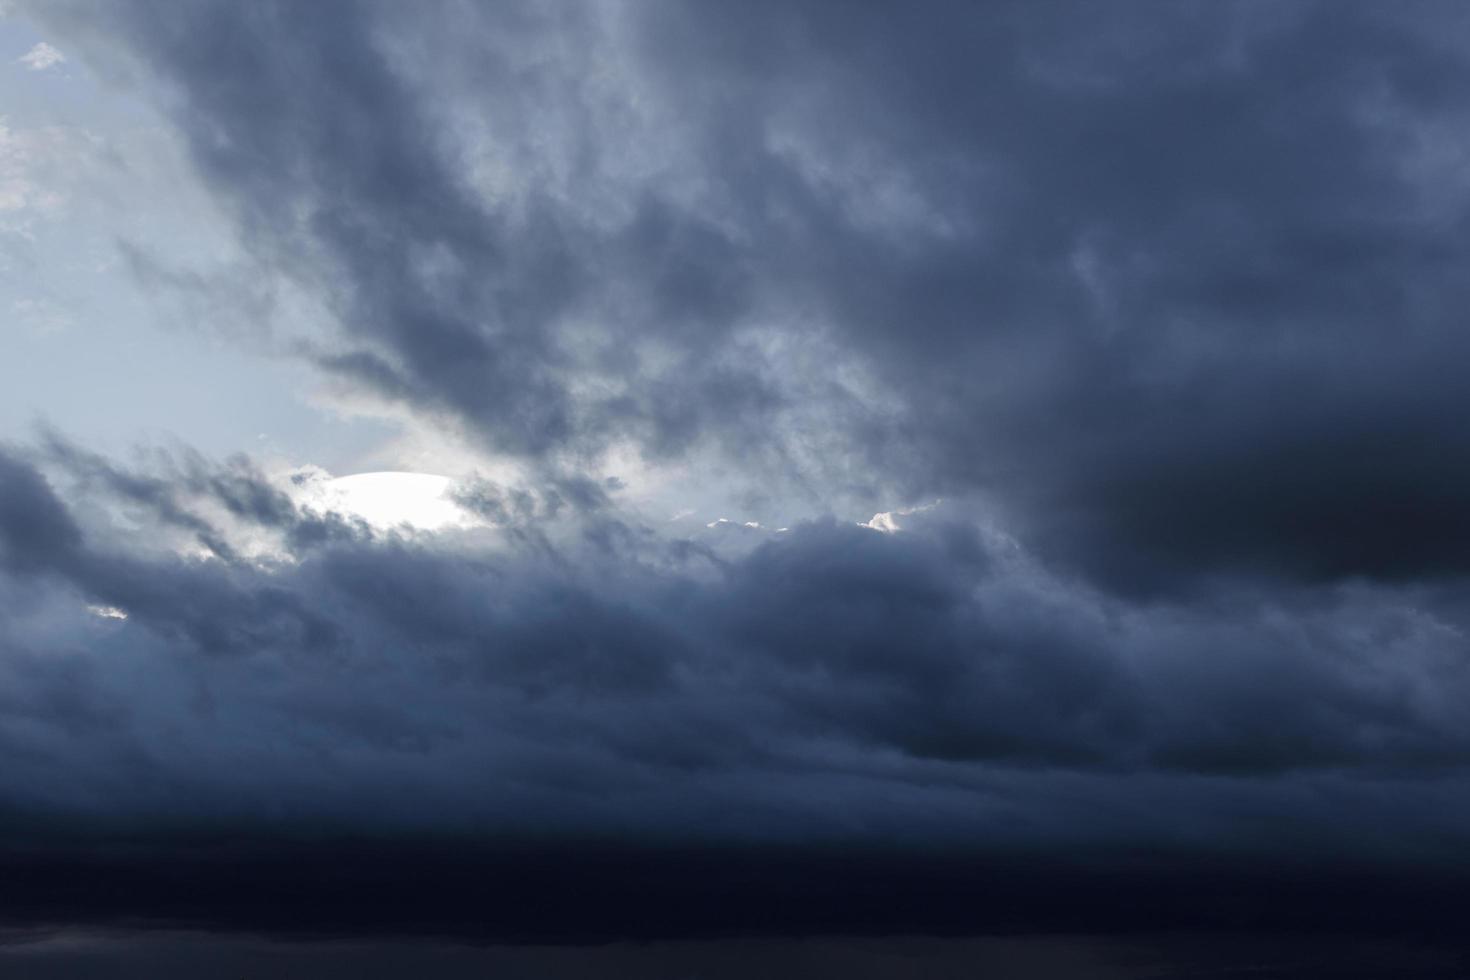 le ciel sombre avec de gros nuages convergents et un violent orage avant la pluie. photo